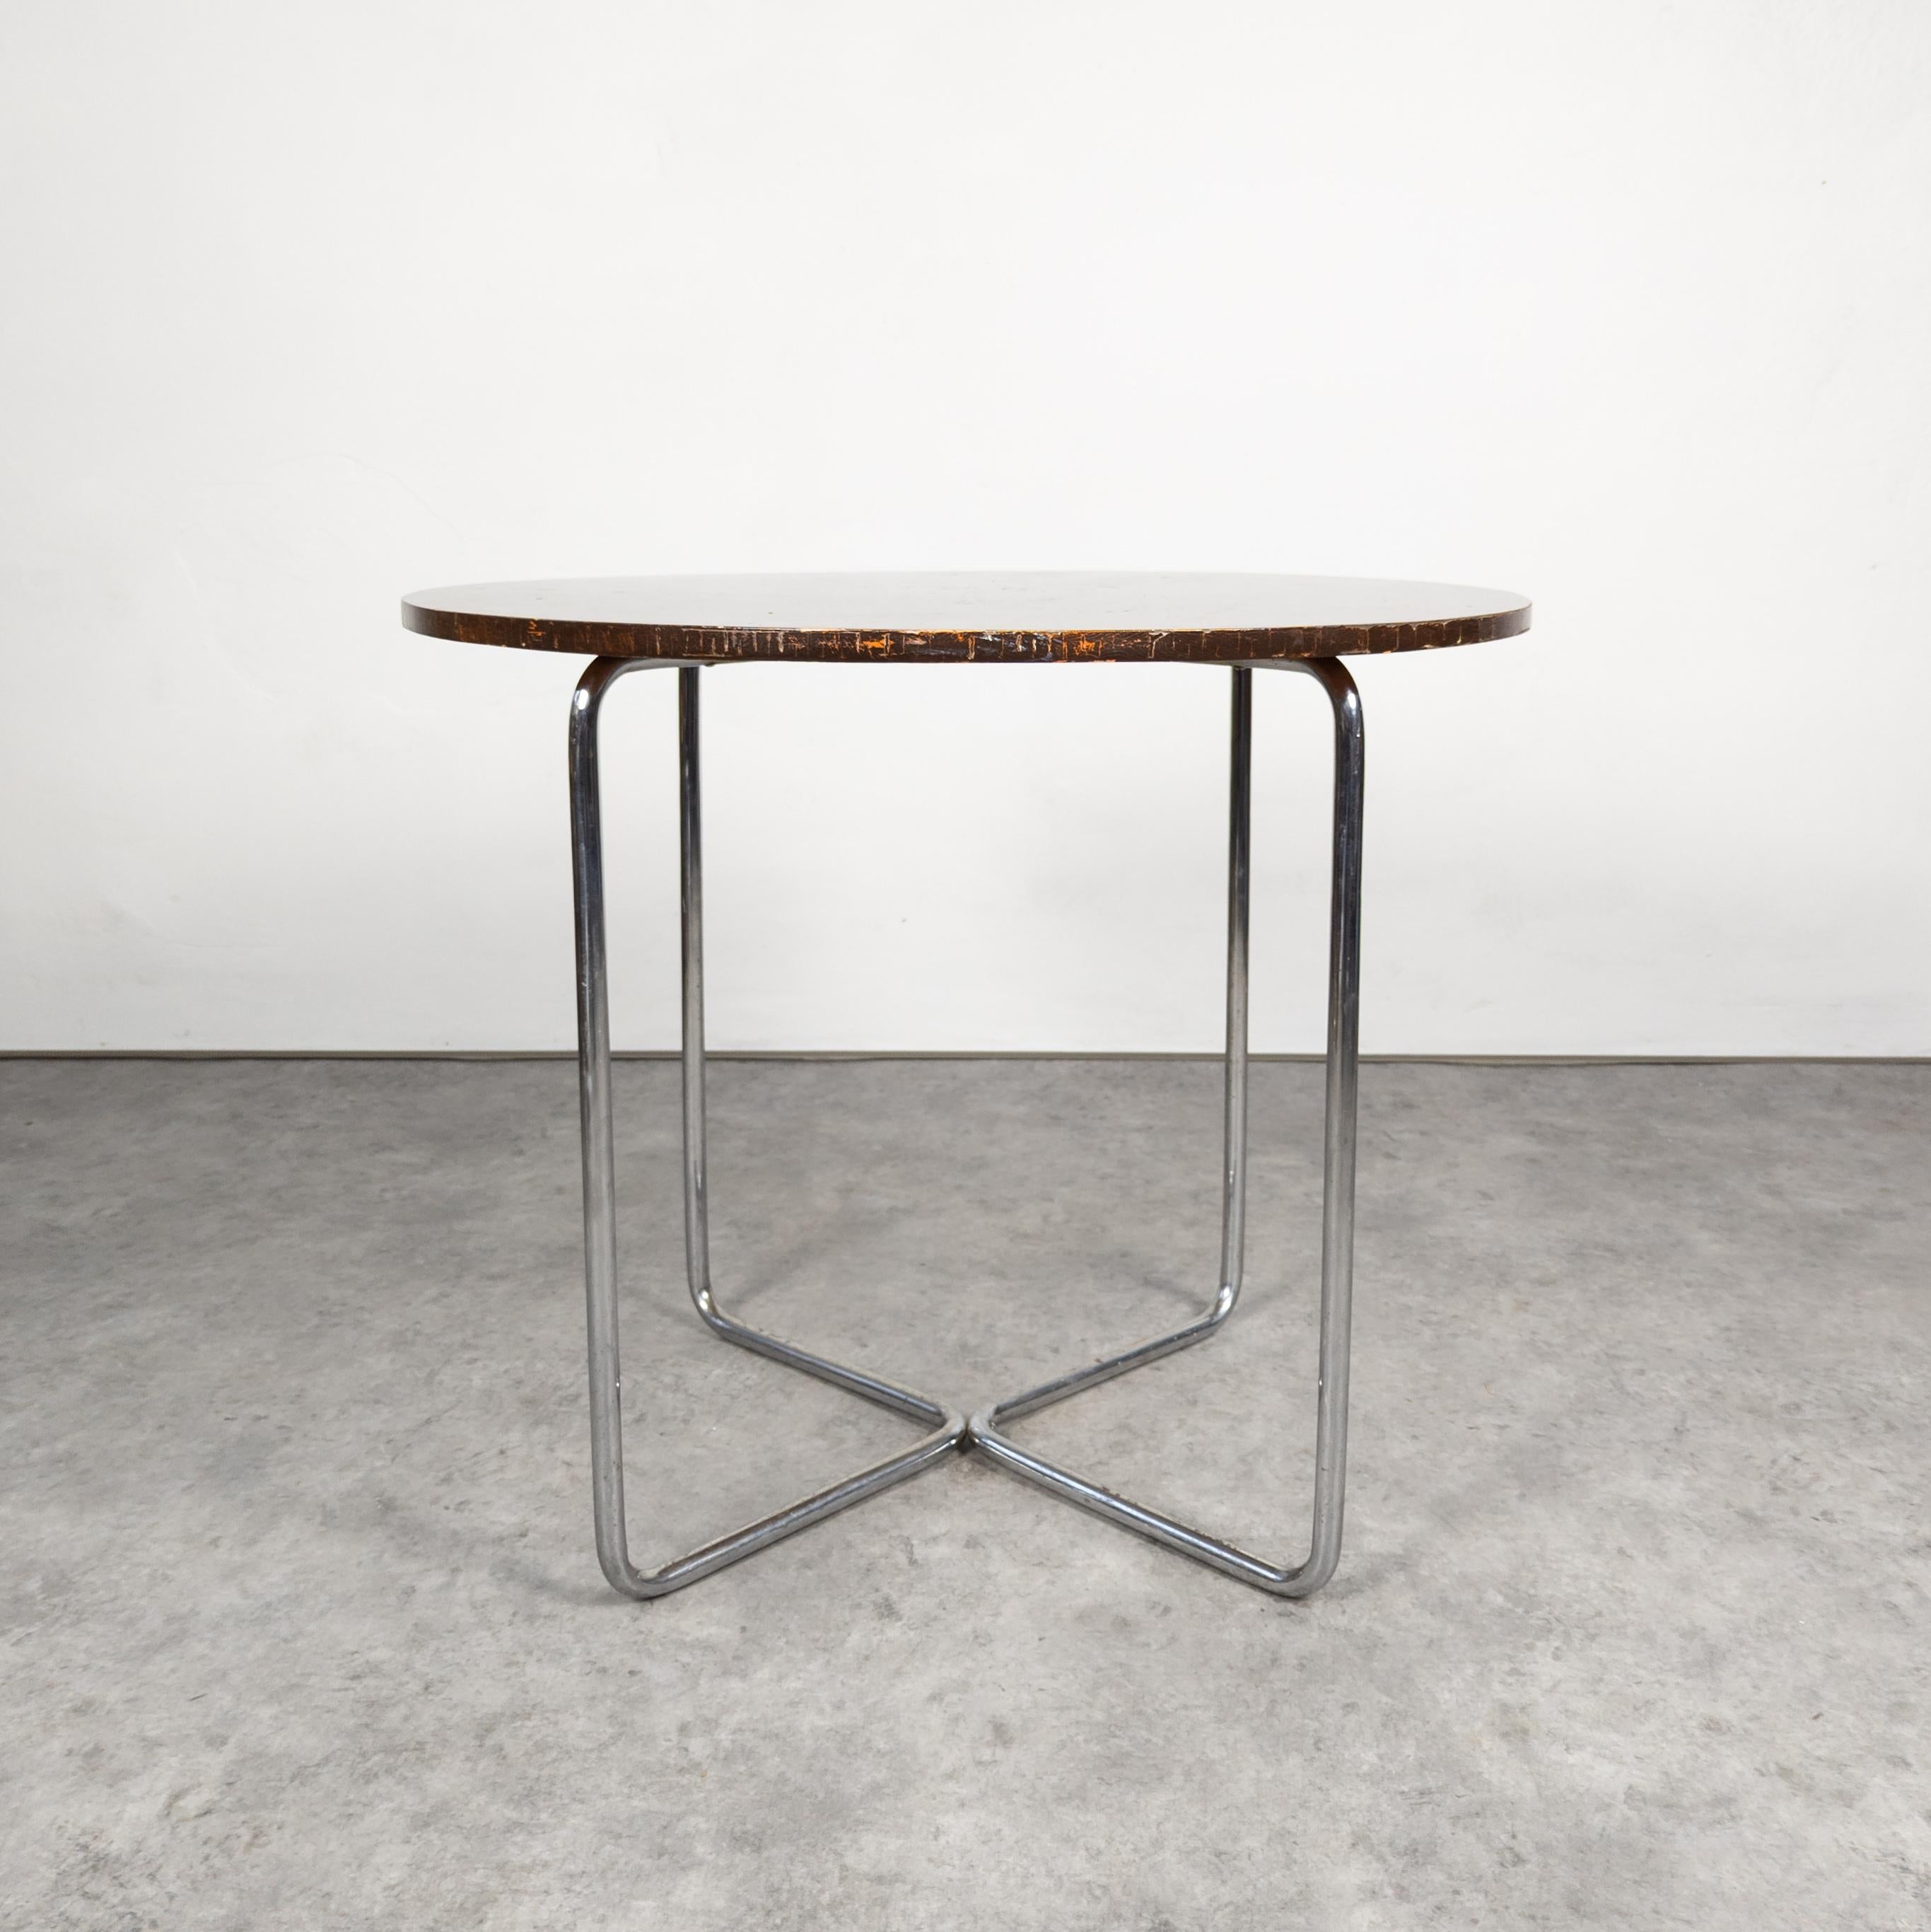 La table Thonet B 27, conçue par Marcel Breuer, est une pièce minimaliste et emblématique. Il se compose d'un élégant cadre en acier tubulaire et d'un plateau circulaire en verre ou en bois, incarnant l'esthétique du Bauhaus, qui veut que la forme